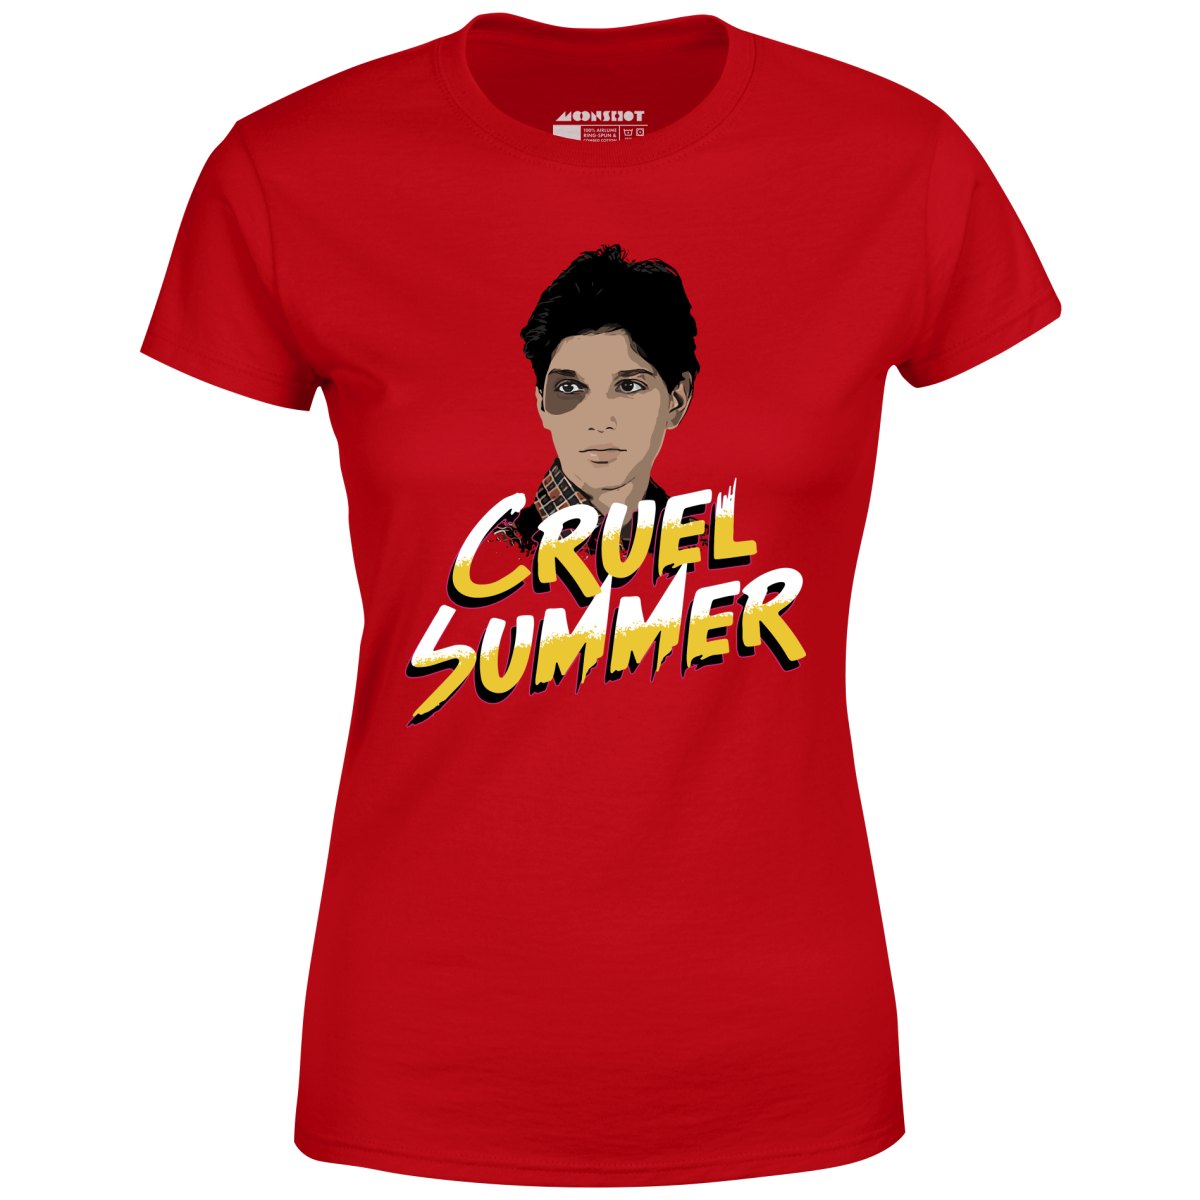 Cruel Summer - Women's T-Shirt